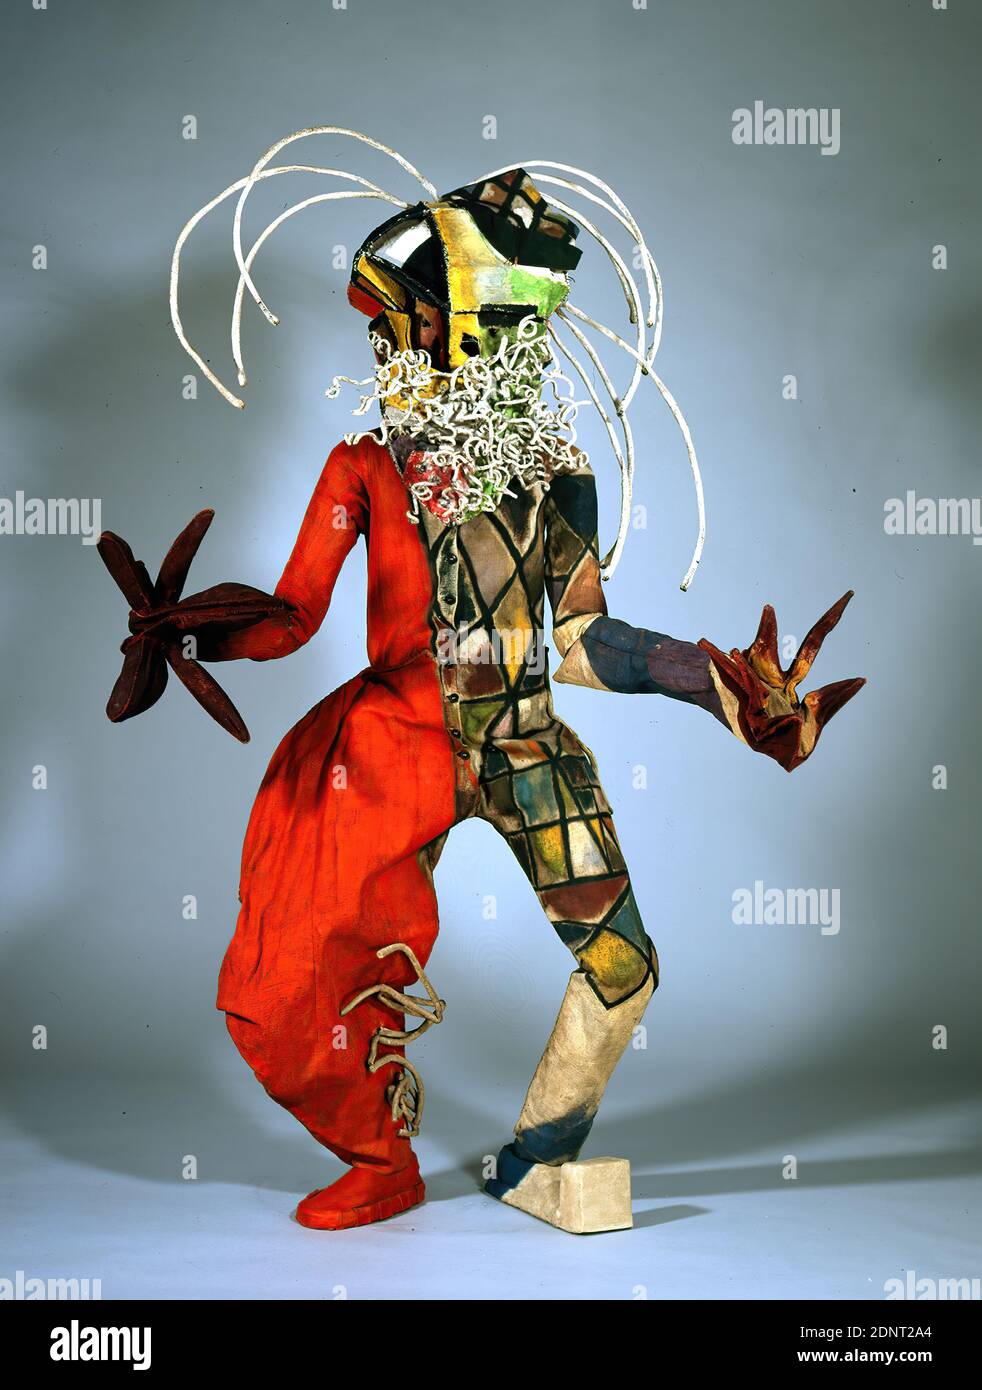 Walter Holdt, Lavinia Schulz, maschera personaggio Toboggan uomo, fibra di lino, filo, lino, filo, totale (maschera): Altezza: 30 cm; larghezza: 40 cm, senza contrassegno, costume/maschera, danza/balletto, espressionismo Foto Stock